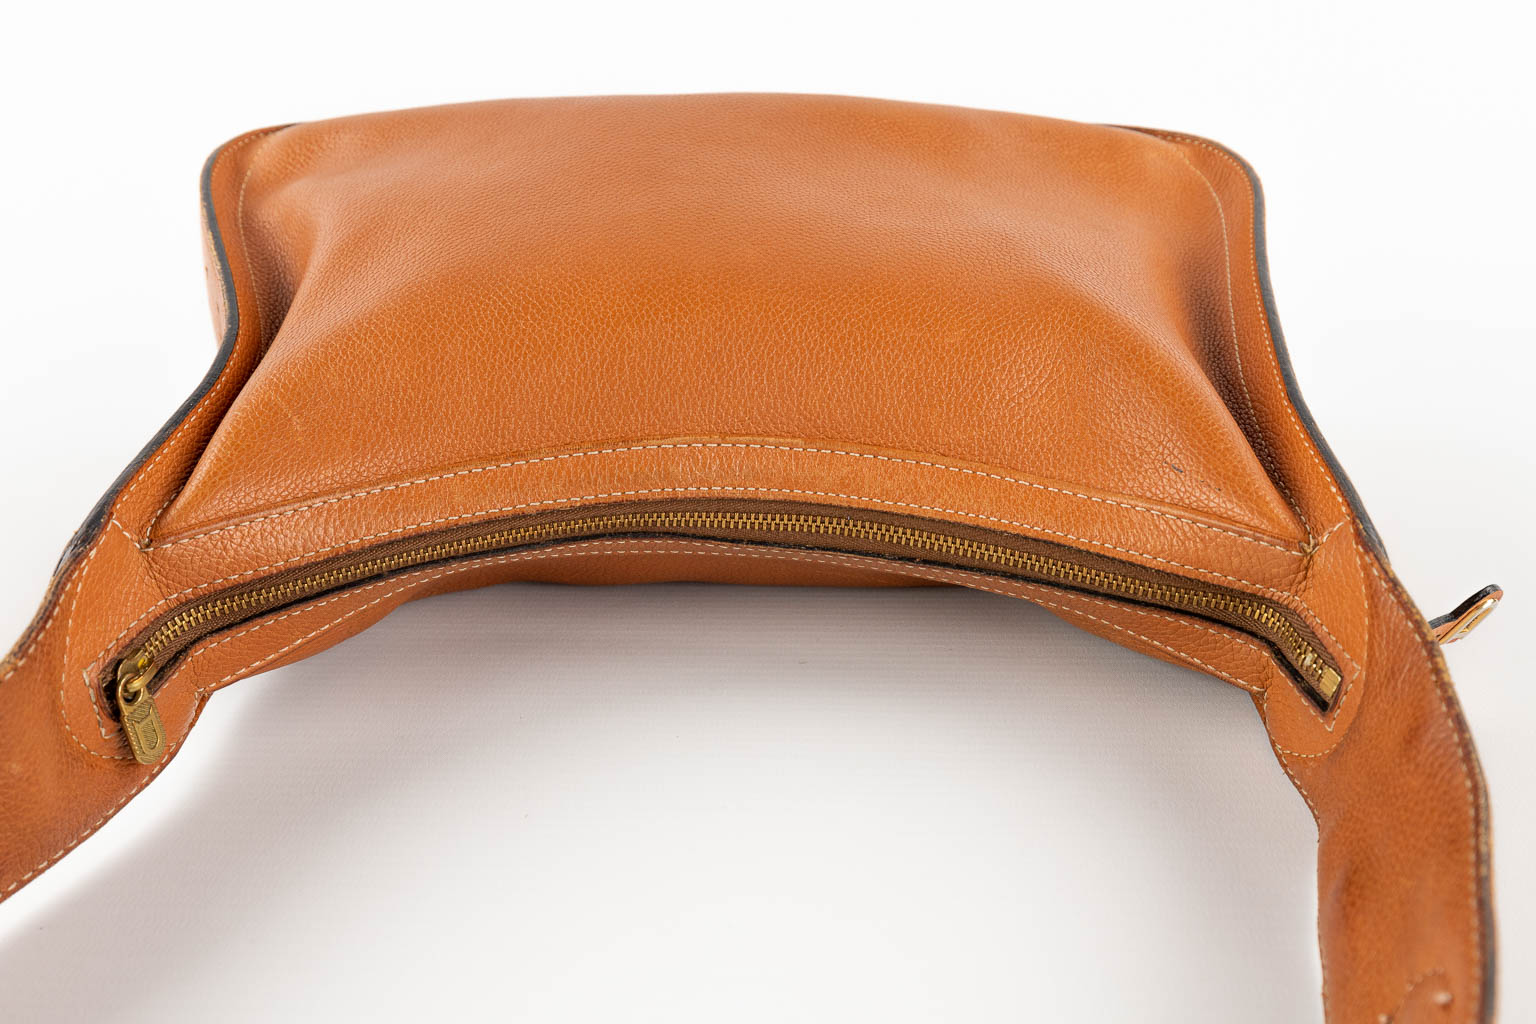 Delvaux, Pensée, een handtas gemaakt uit bruin leder. (W:24 x H:32 cm)